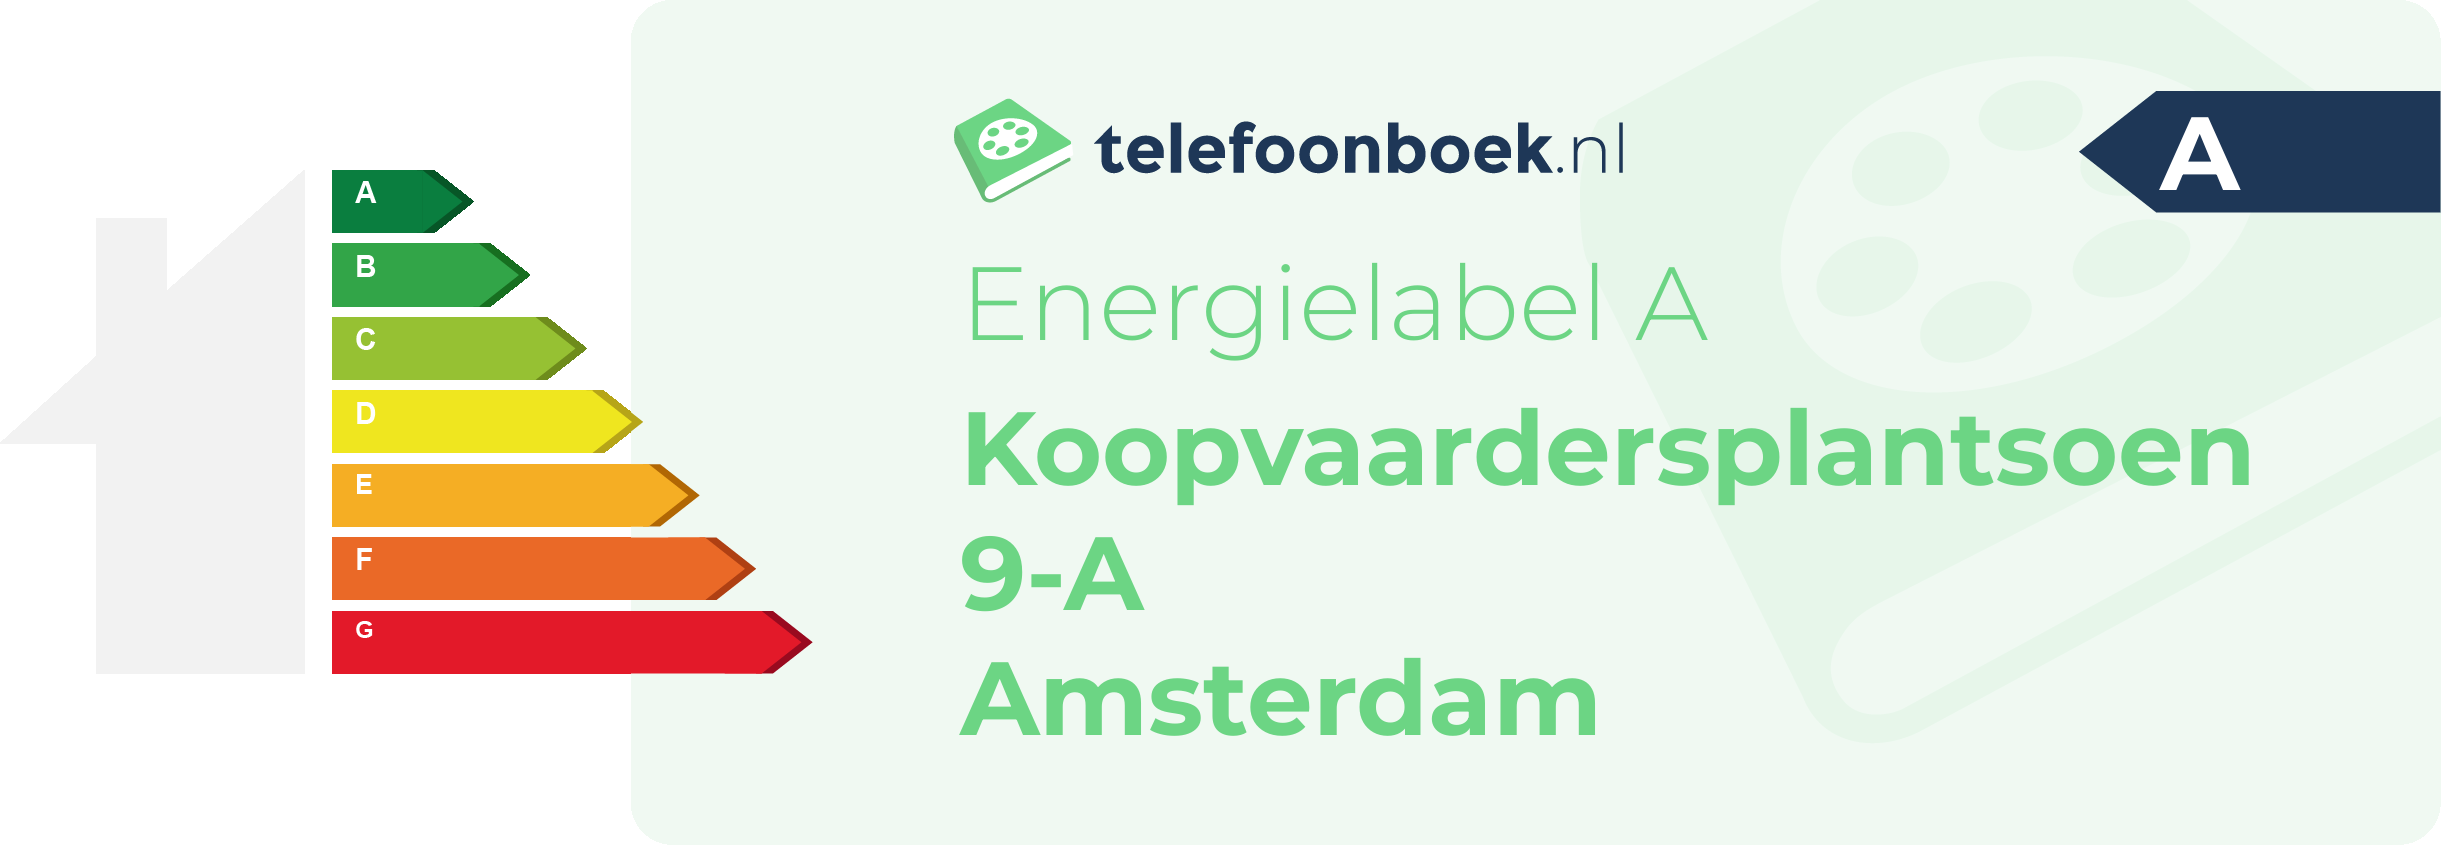 Energielabel Koopvaardersplantsoen 9-A Amsterdam